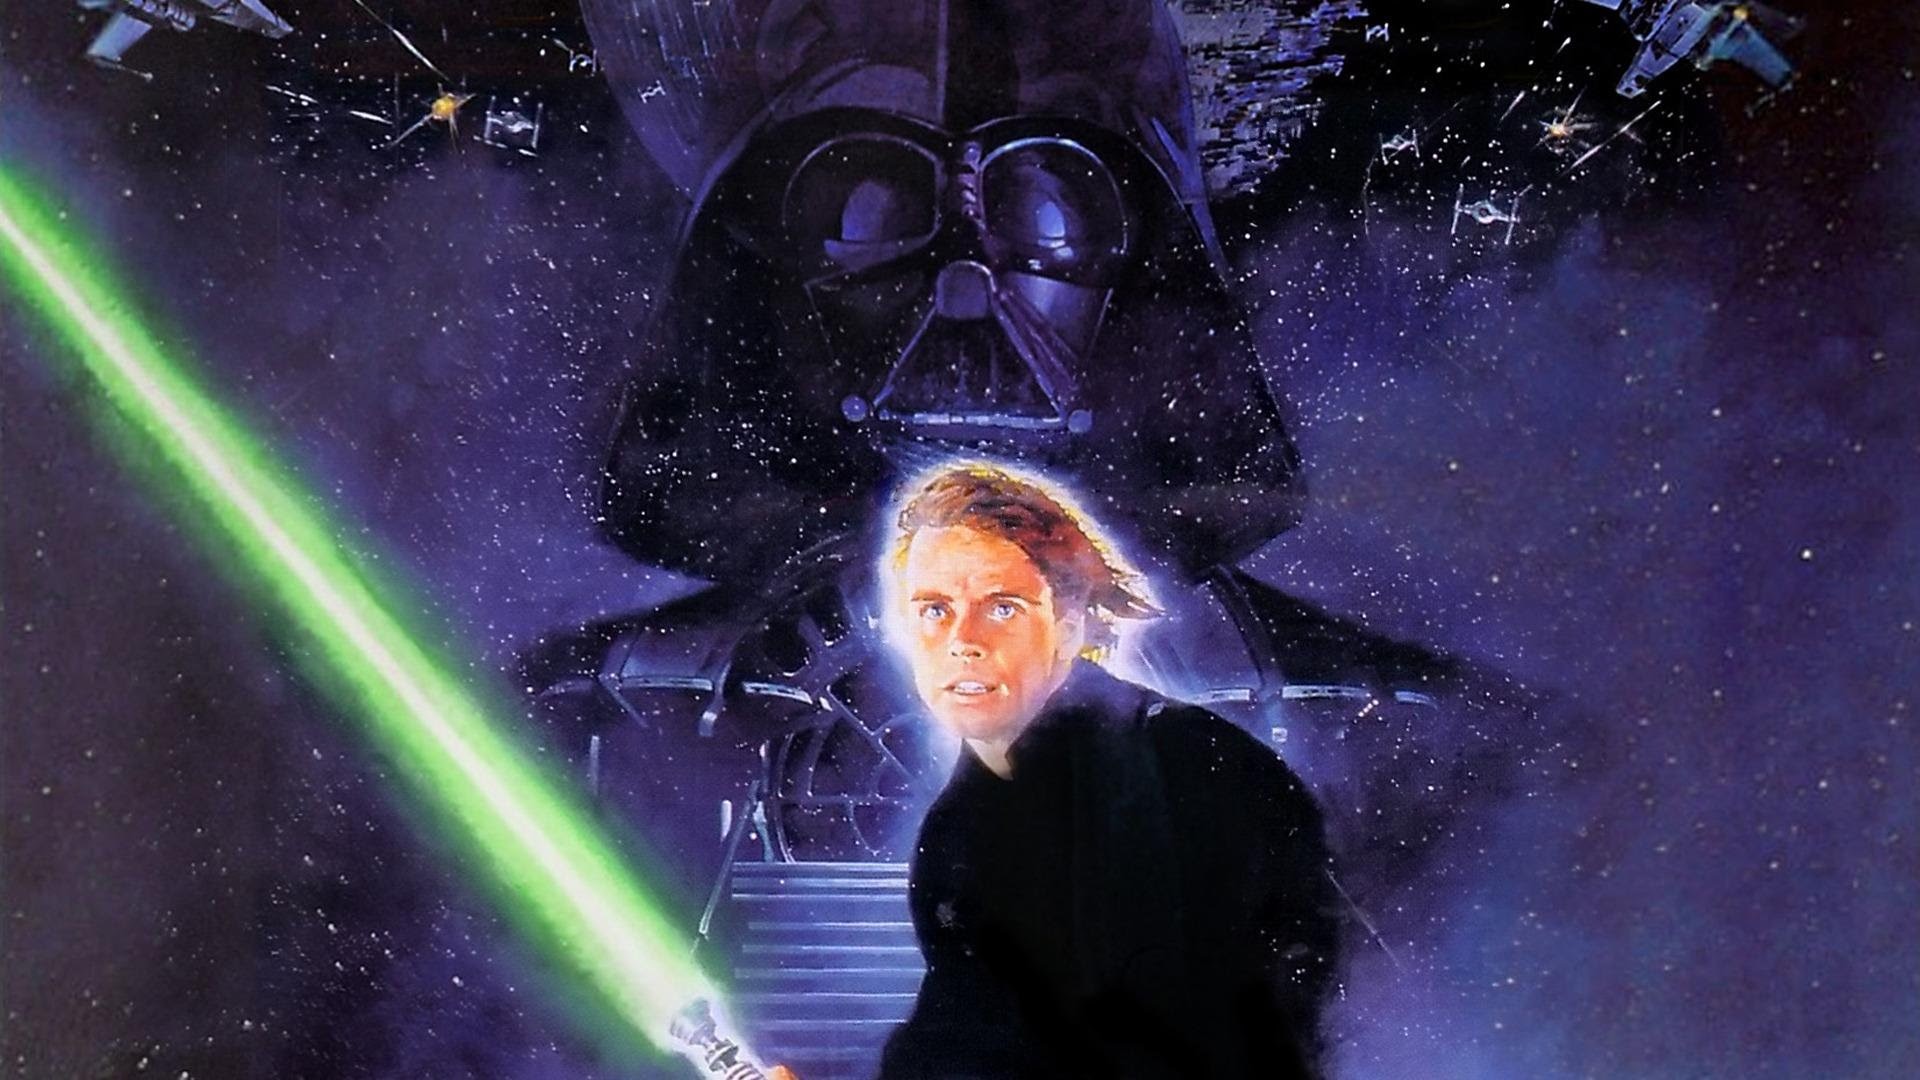 1920x1080 Star Wars: Battlefrontâ¢ Luke Skywalker vs Darth Vader Short Lightsaber  Battle